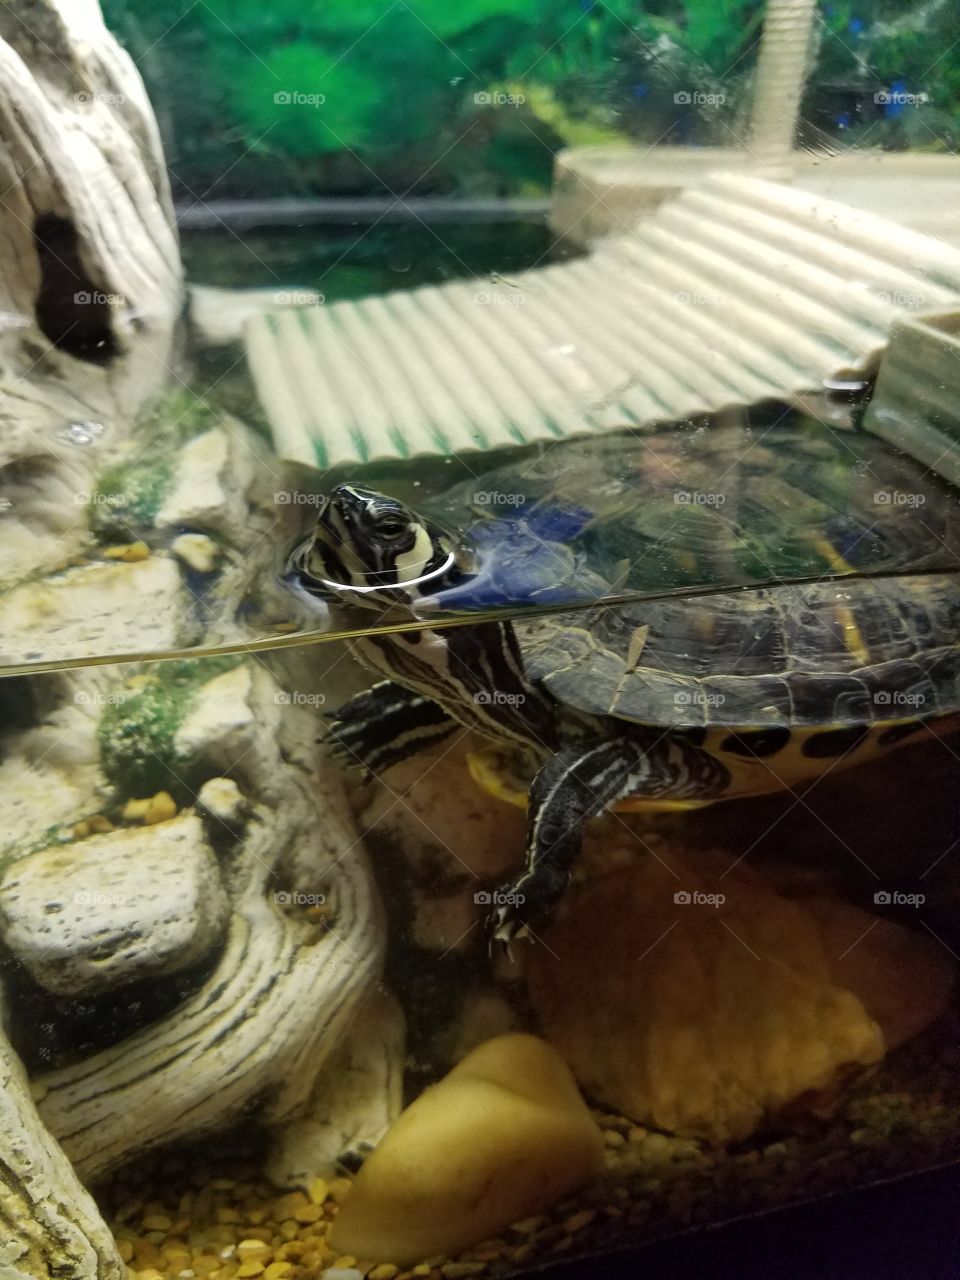 Leonardo Pet Turtle